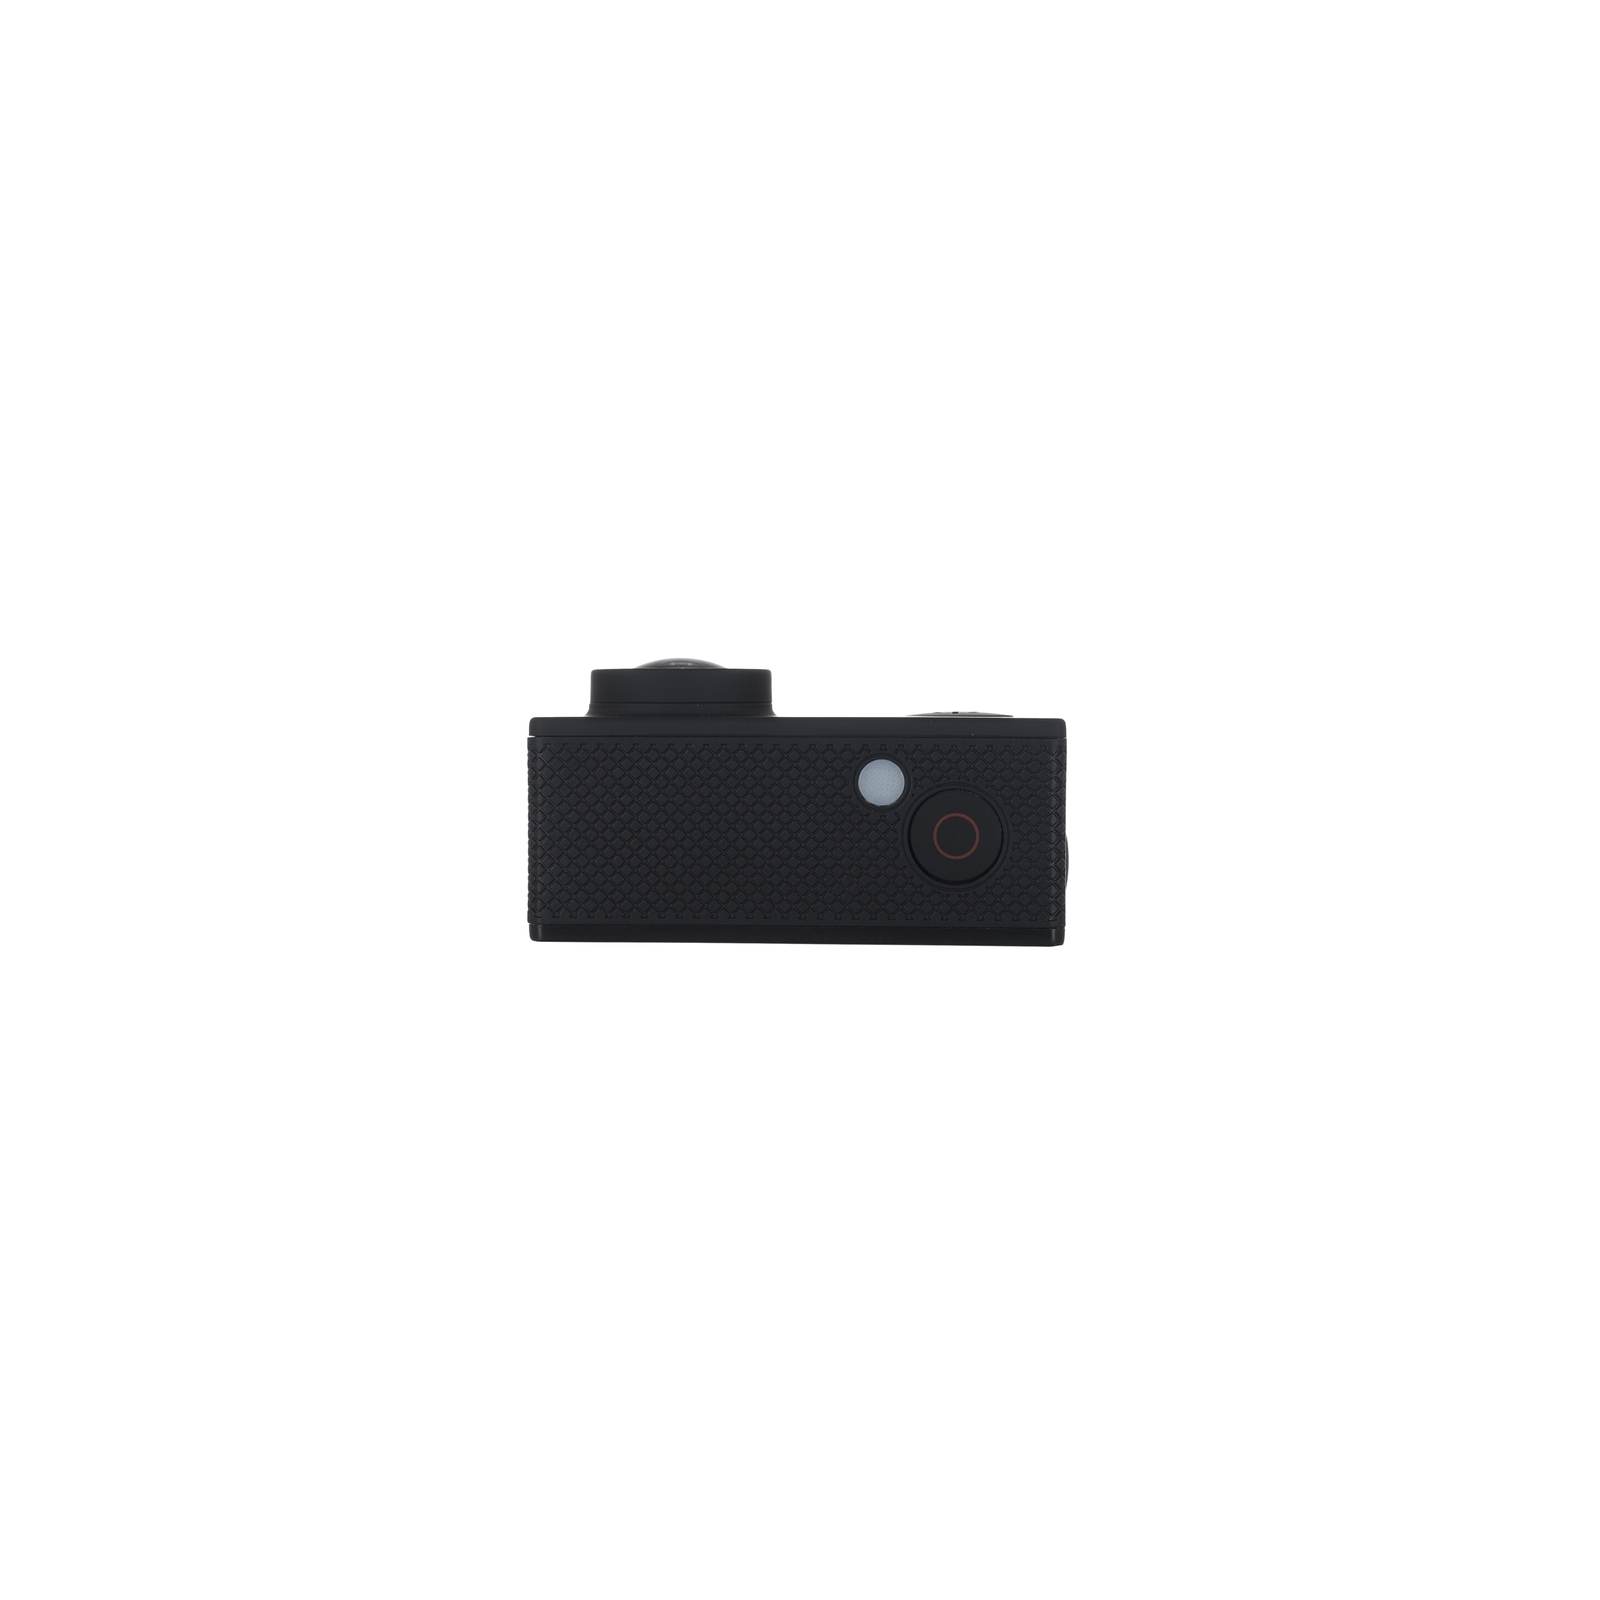 Екшн-камера Bravis A1 black (BRAVISA1b) зображення 7